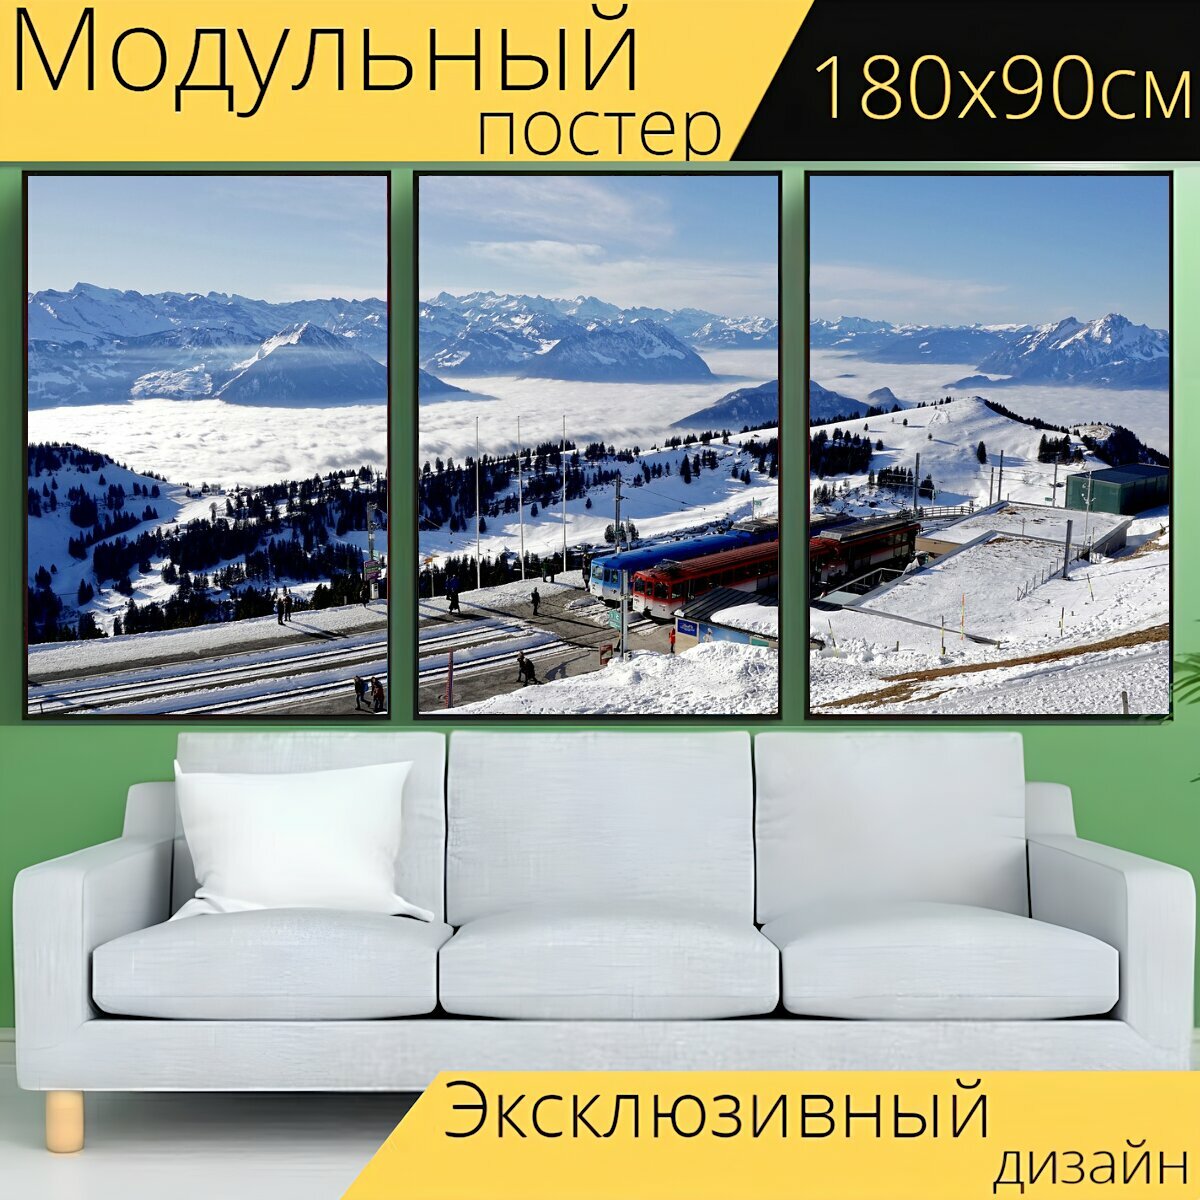 Модульный постер "Панорама, горы, зима" 180 x 90 см. для интерьера